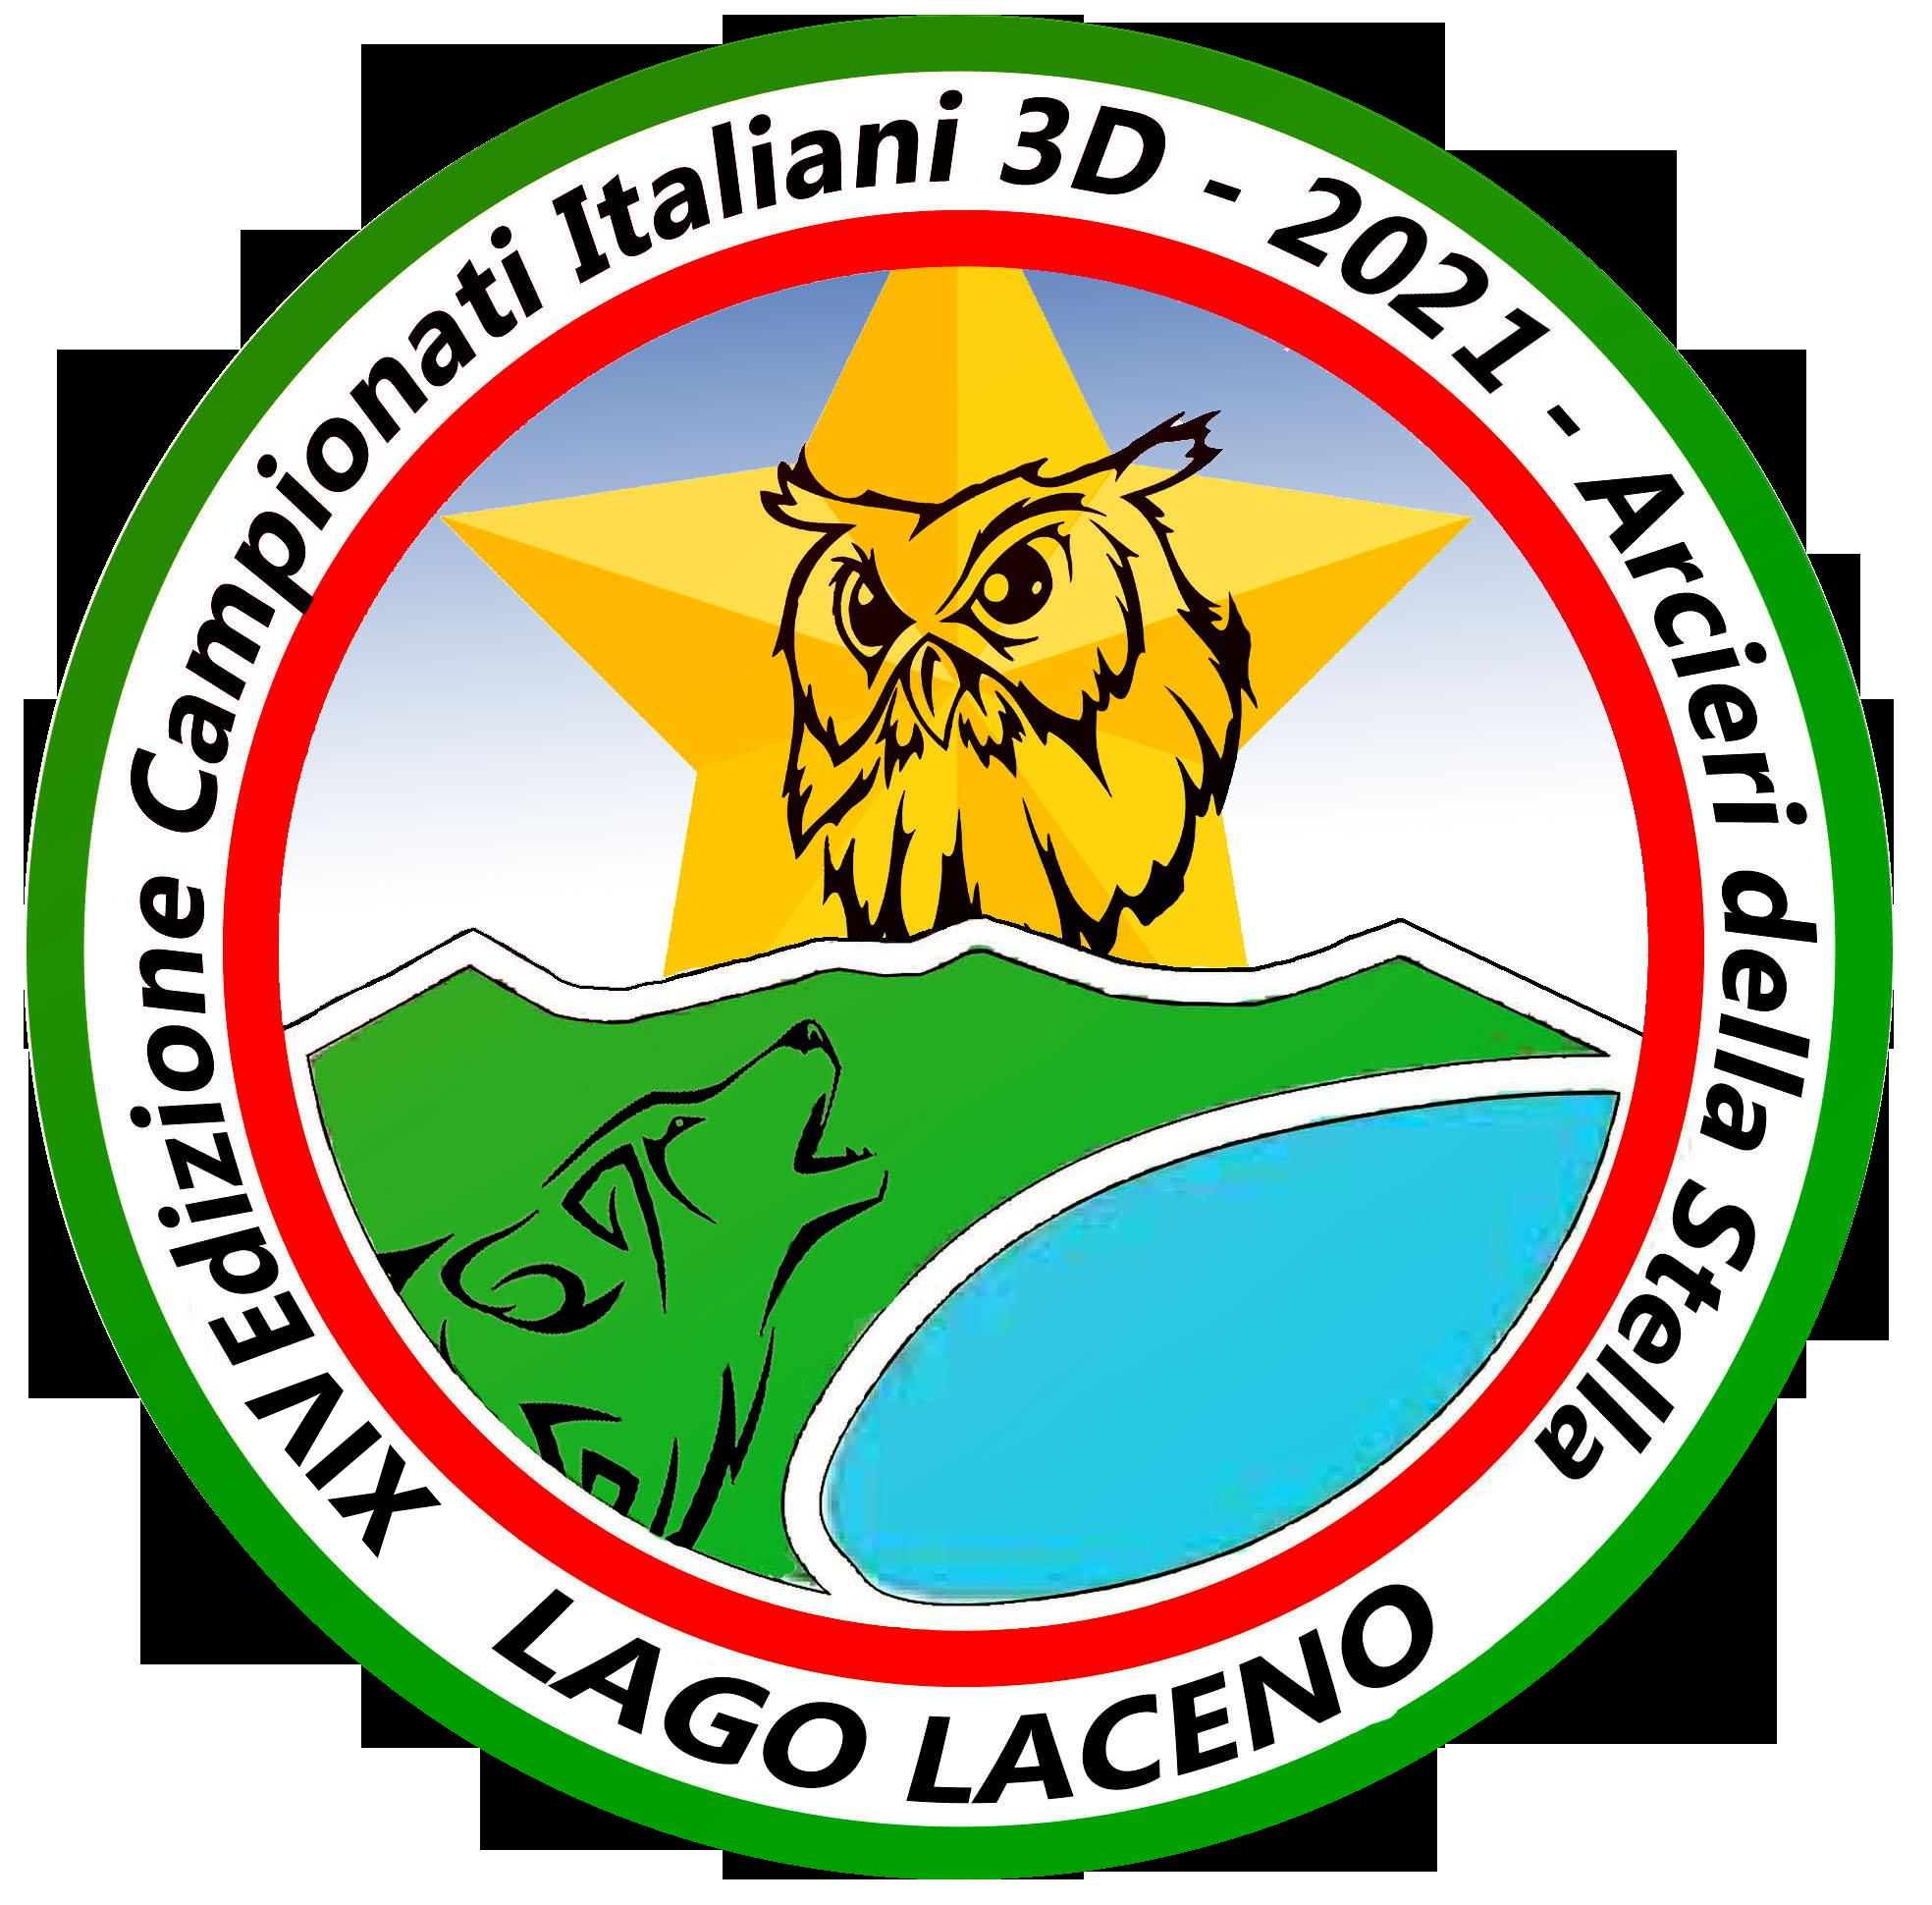 Campionato Italiano 3D